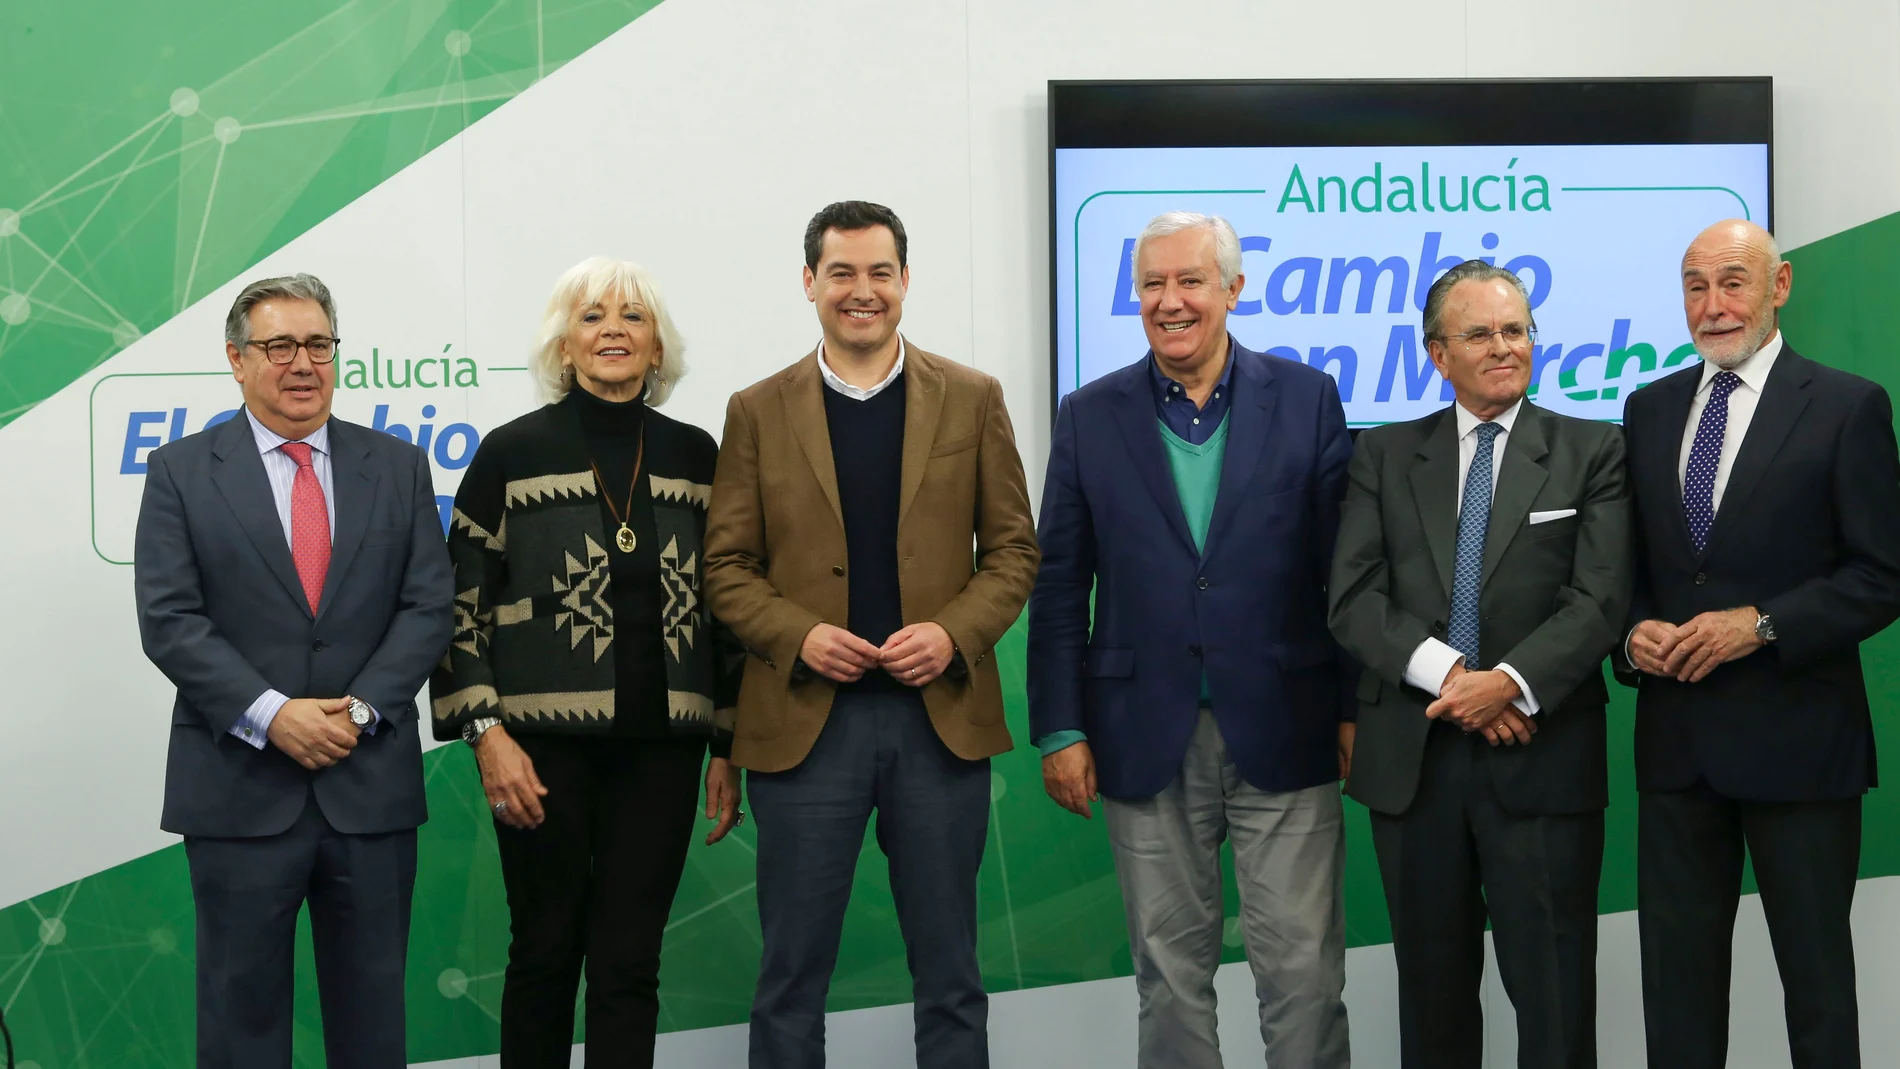 De izquierda a derecha, Juan Ignacio Zoido, Teófila Martínez, Juanma Moreno, Javier Arenas, Antonio Hernández Mancha y Gabino Puche, ayer en la sede del PP andaluz